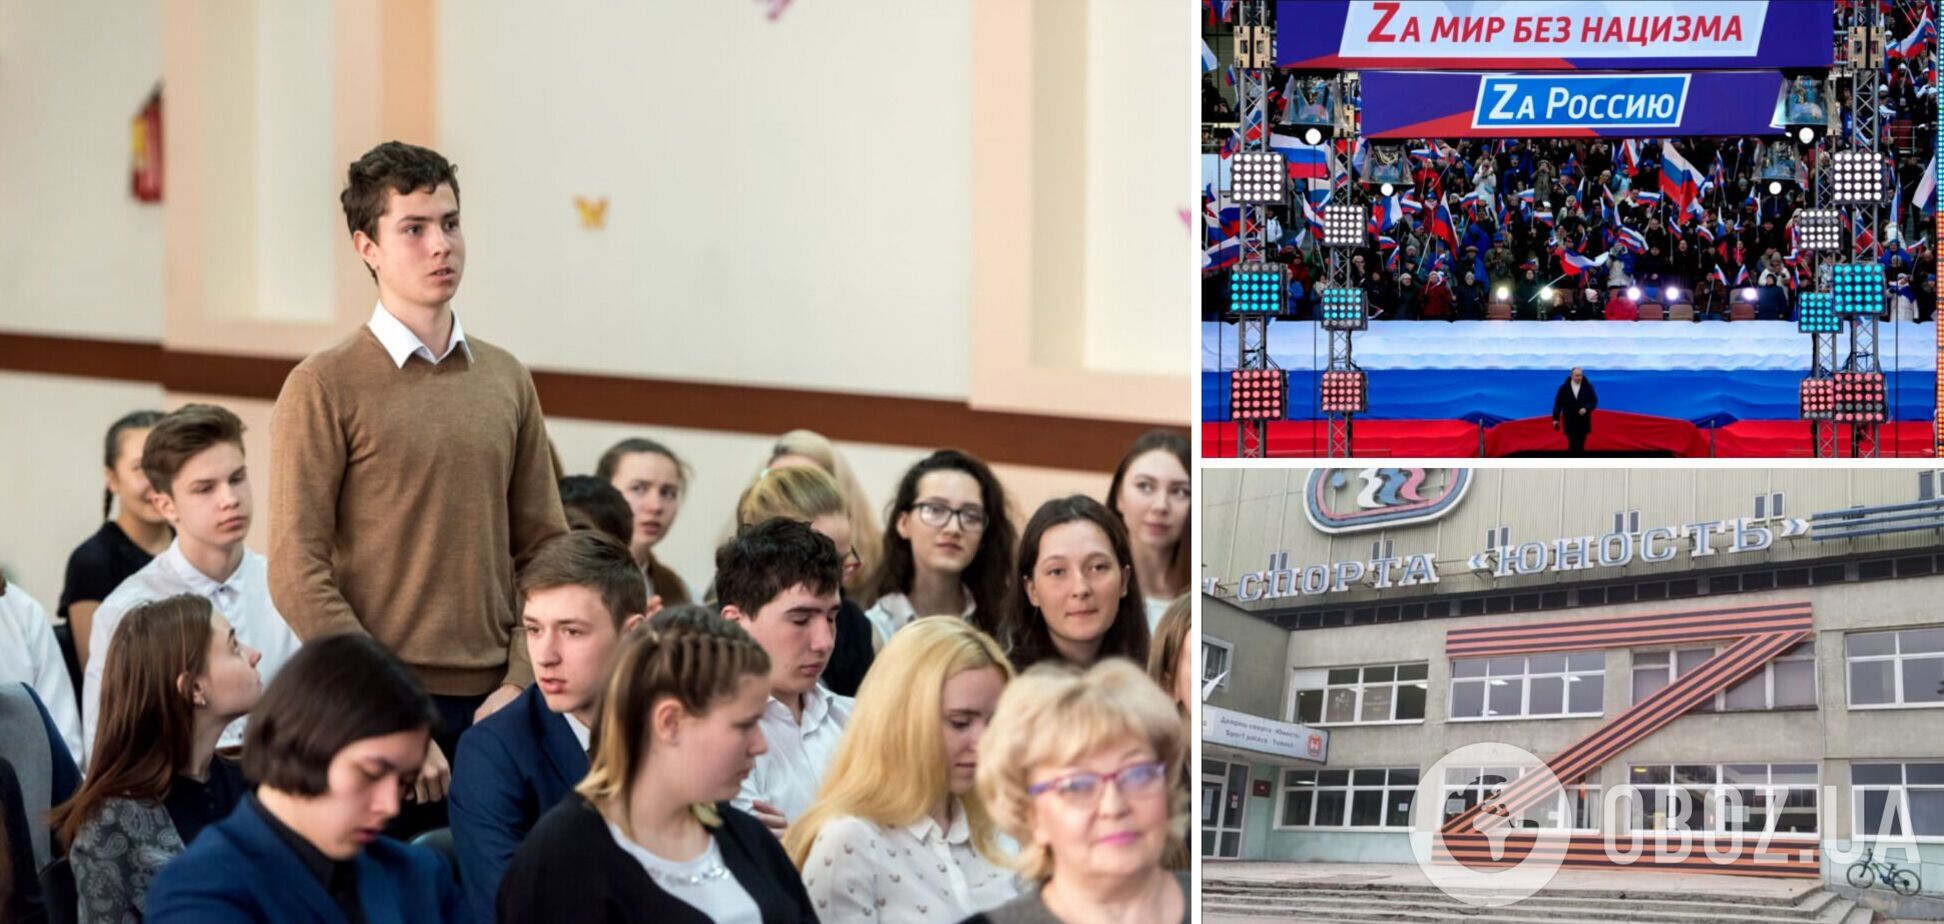 Российская цензура в учебных заведениях усиливается перед выборами президента – британская разведка